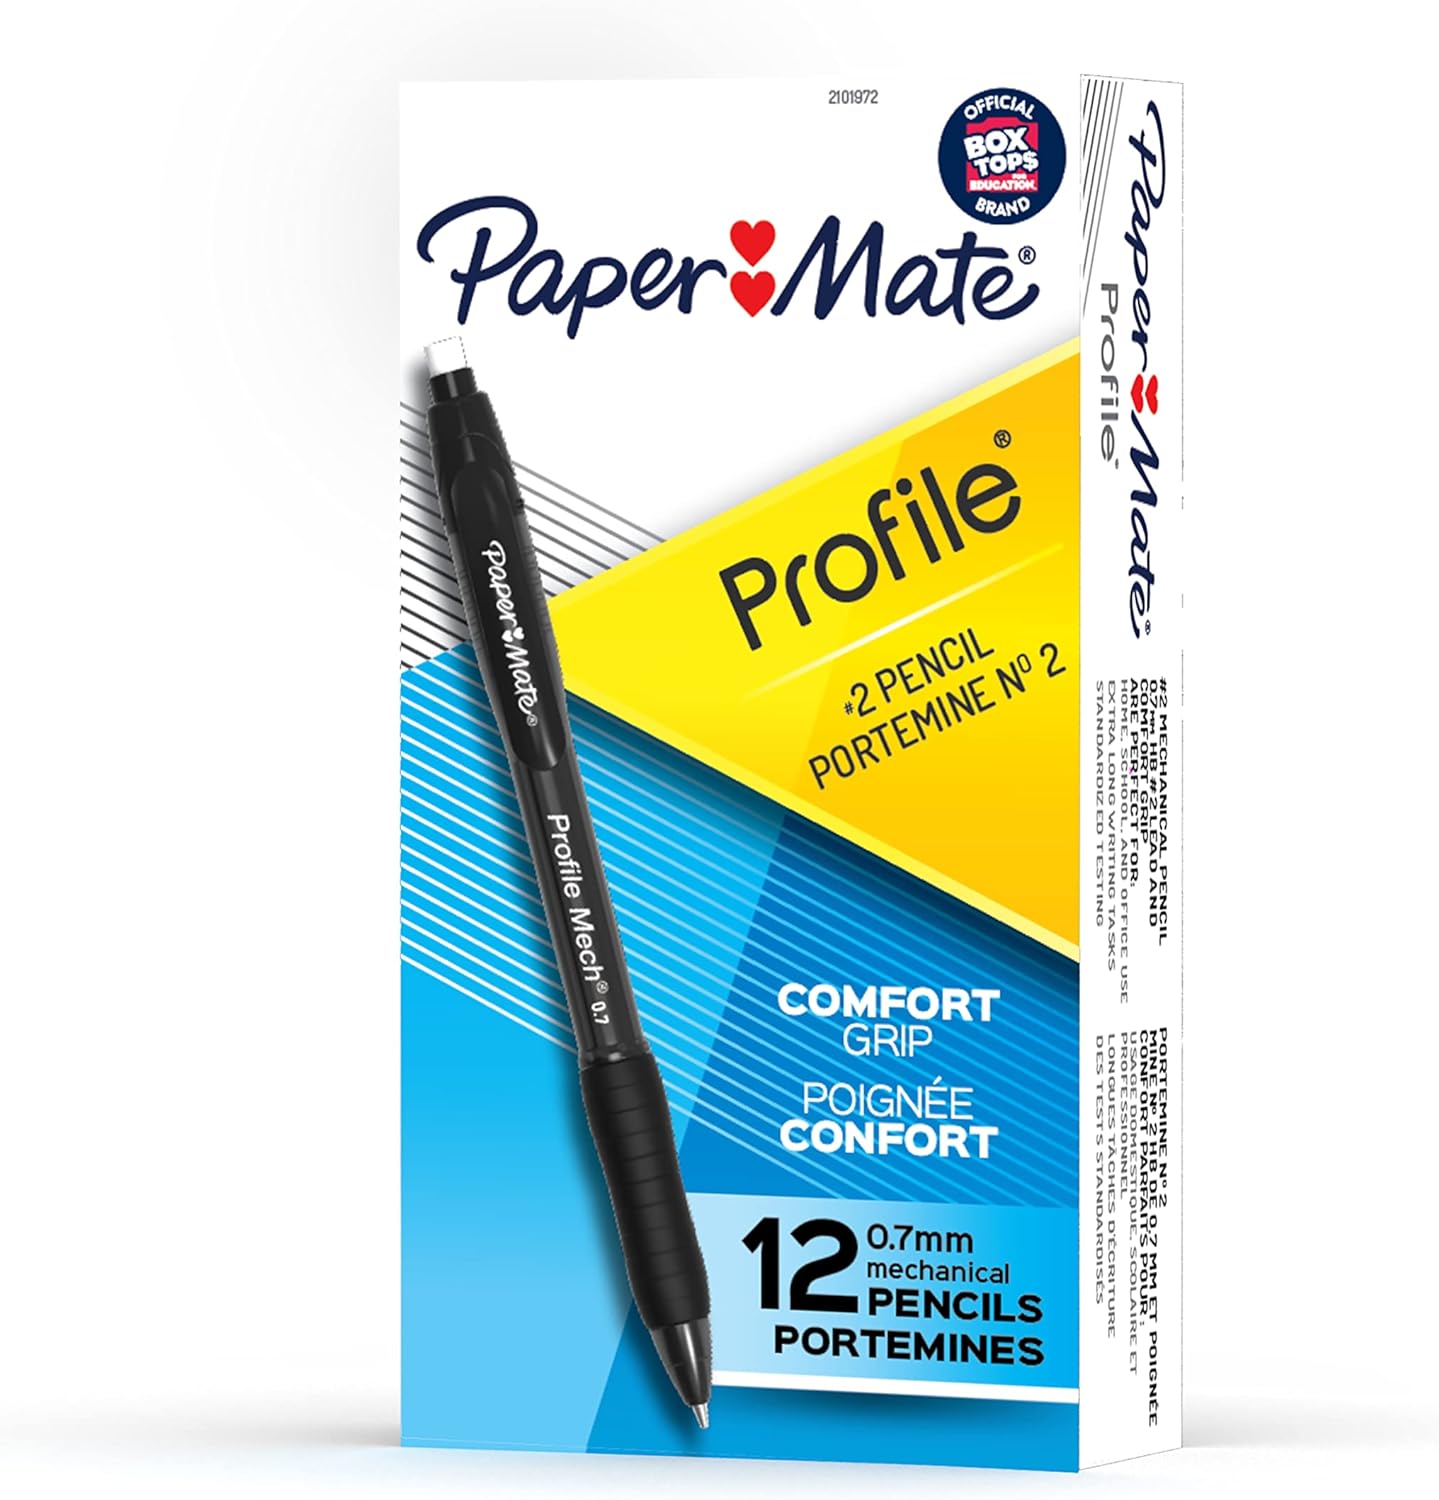 Paper Mate Profile Mech Mechanical Pencil Set 0.7mm, 12 count  - $4.16